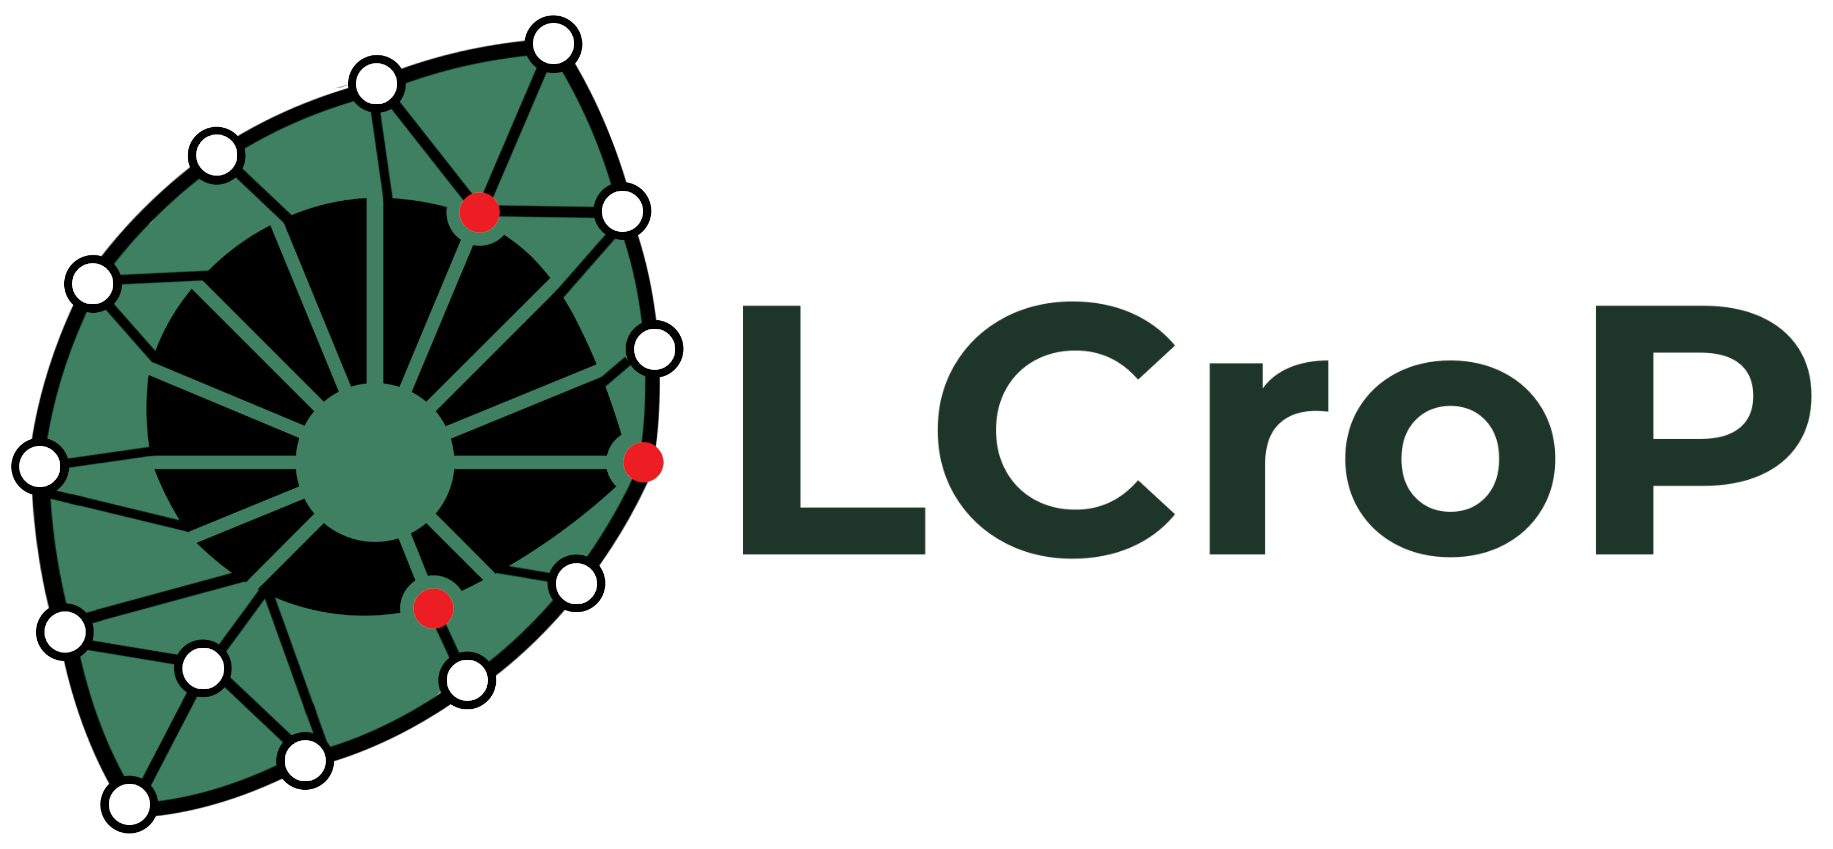 LCroP logo